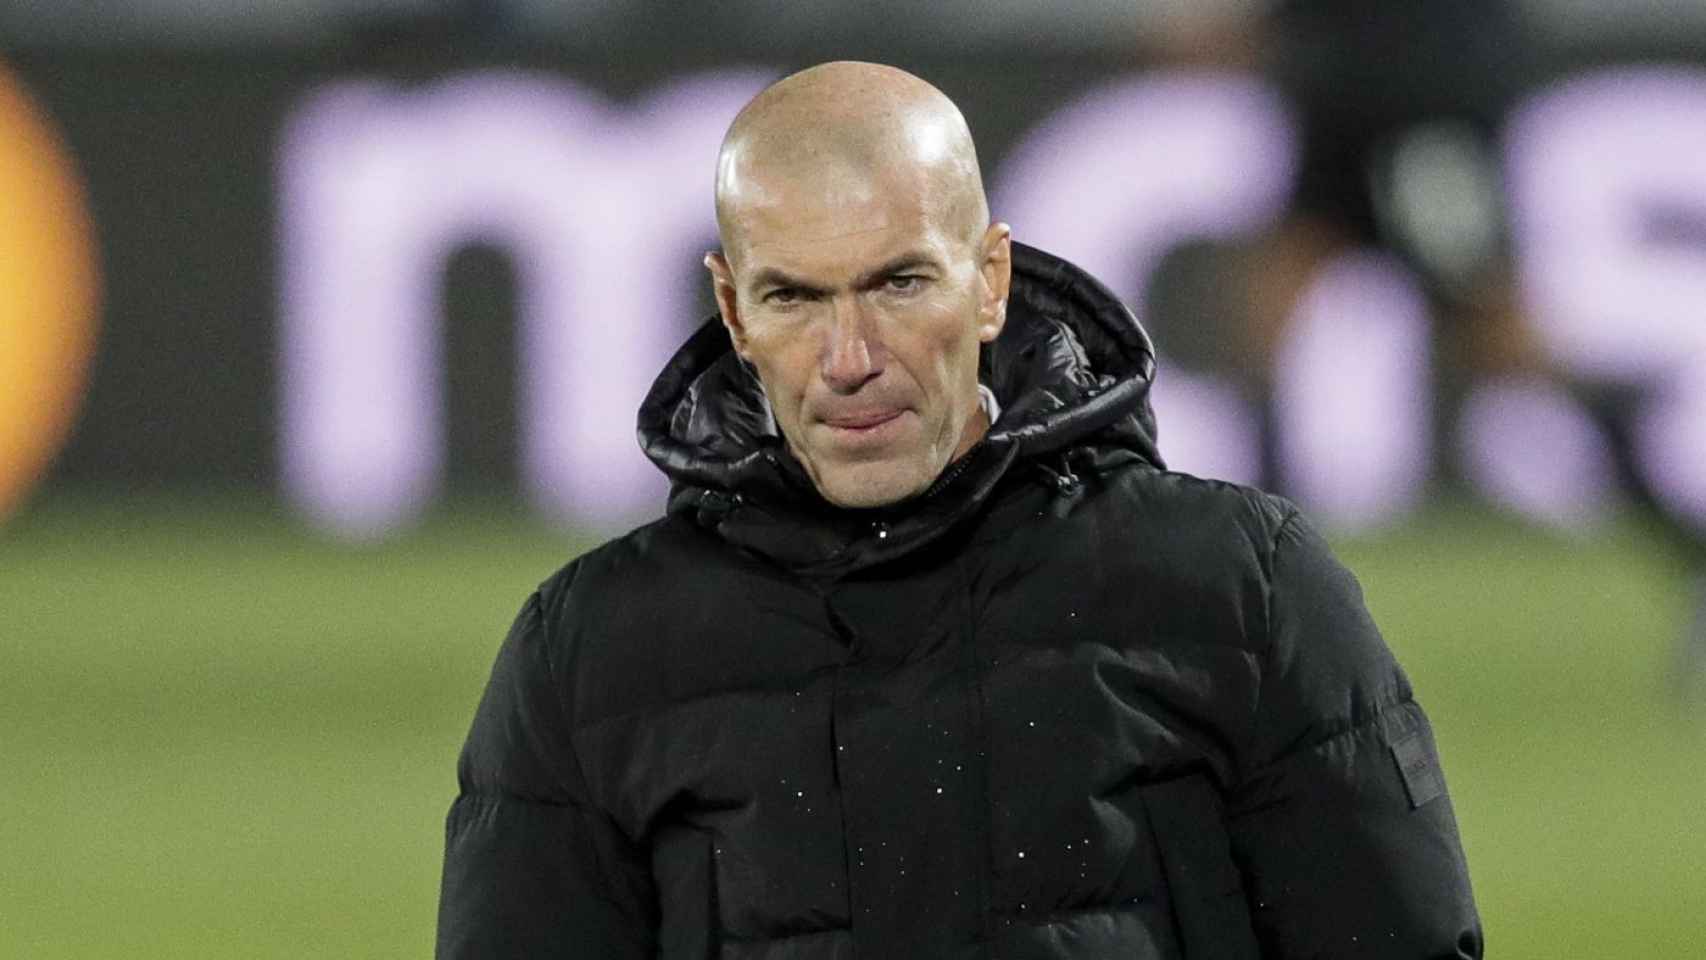 Zidane, en un encuentro del Real Madrid | EFE